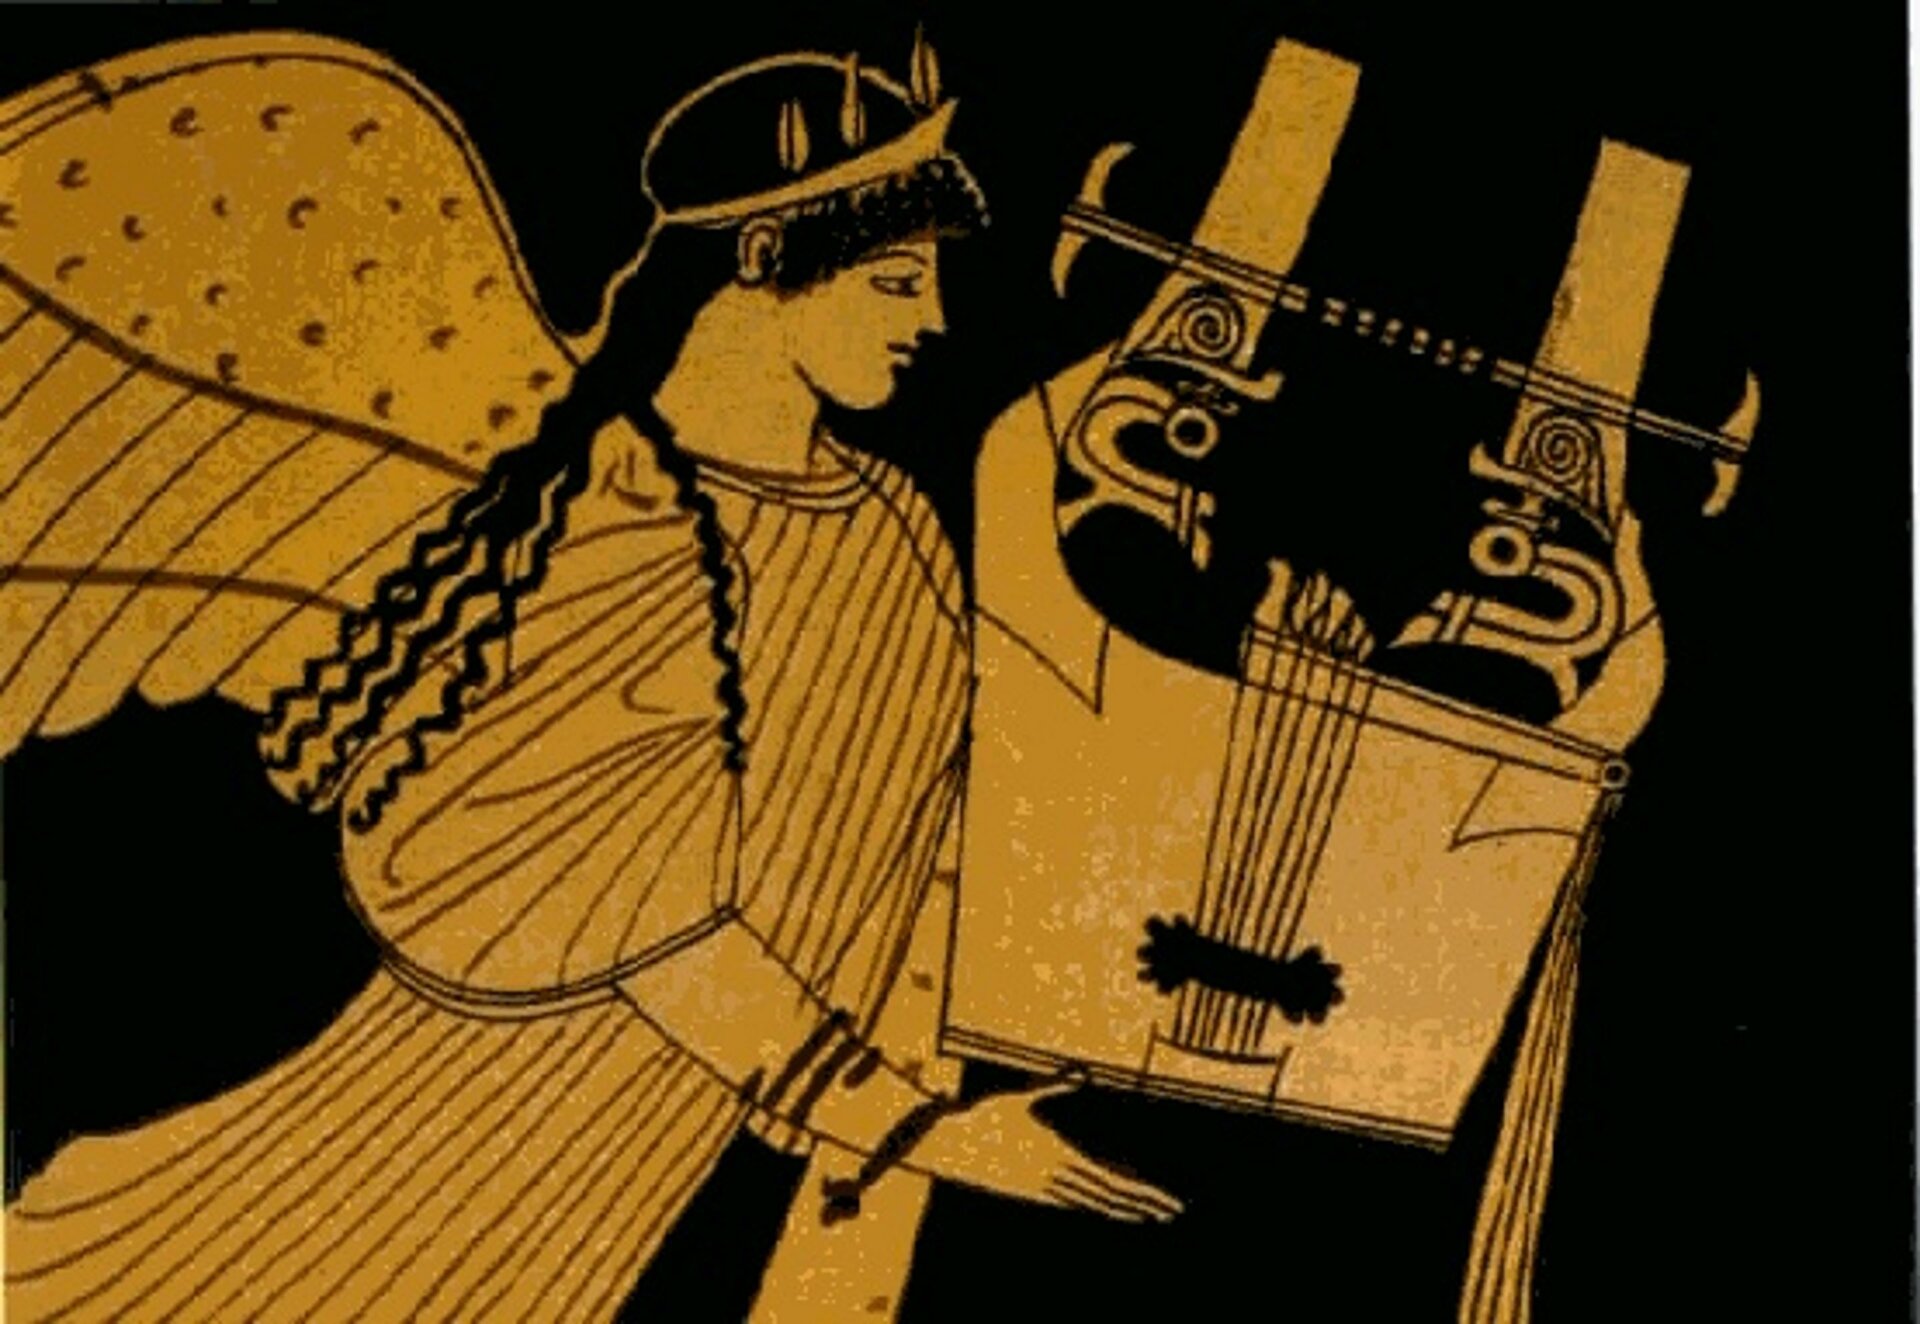 Ilustracja przedstawia postać w długich czarnych włosach, która jest uskrzydlona. Na głowie ma wianek z liści laurowych. W dłoniach trzyma instrument kitara - instrument muzyczny używany przez starożytnych Greków. Grafika jest w barwie czarnej i pomarańczowej.